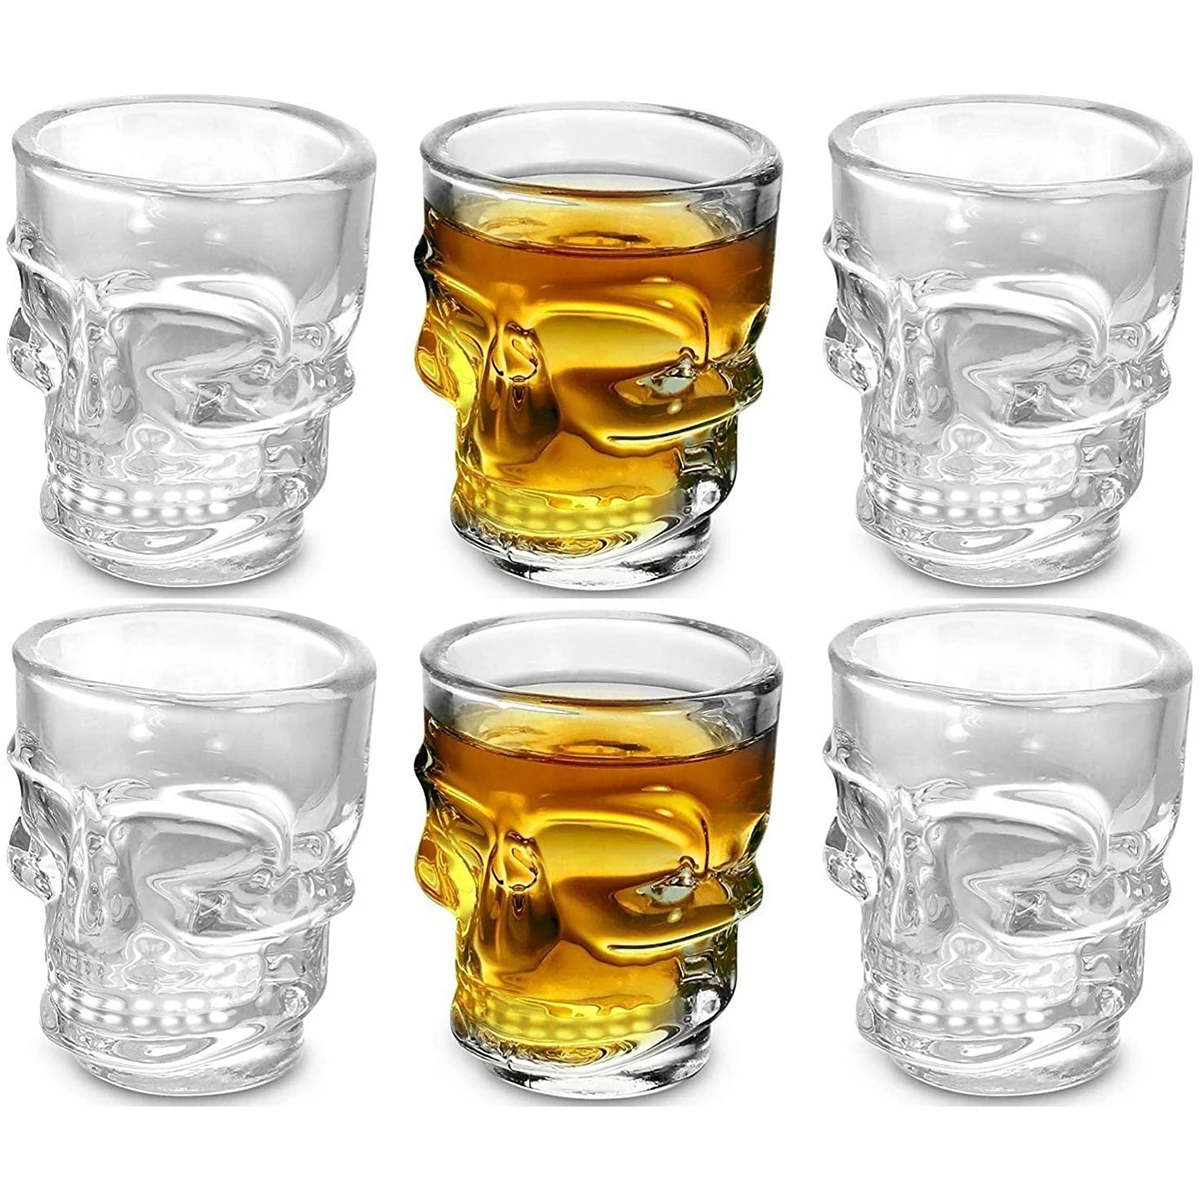 Clear Skull Face Whiskey Shot Glasses Set of 6,halloween Skull Shot Glasses Drinking Glassware for Brandy,Liquor,Jello Cup 1.7oz